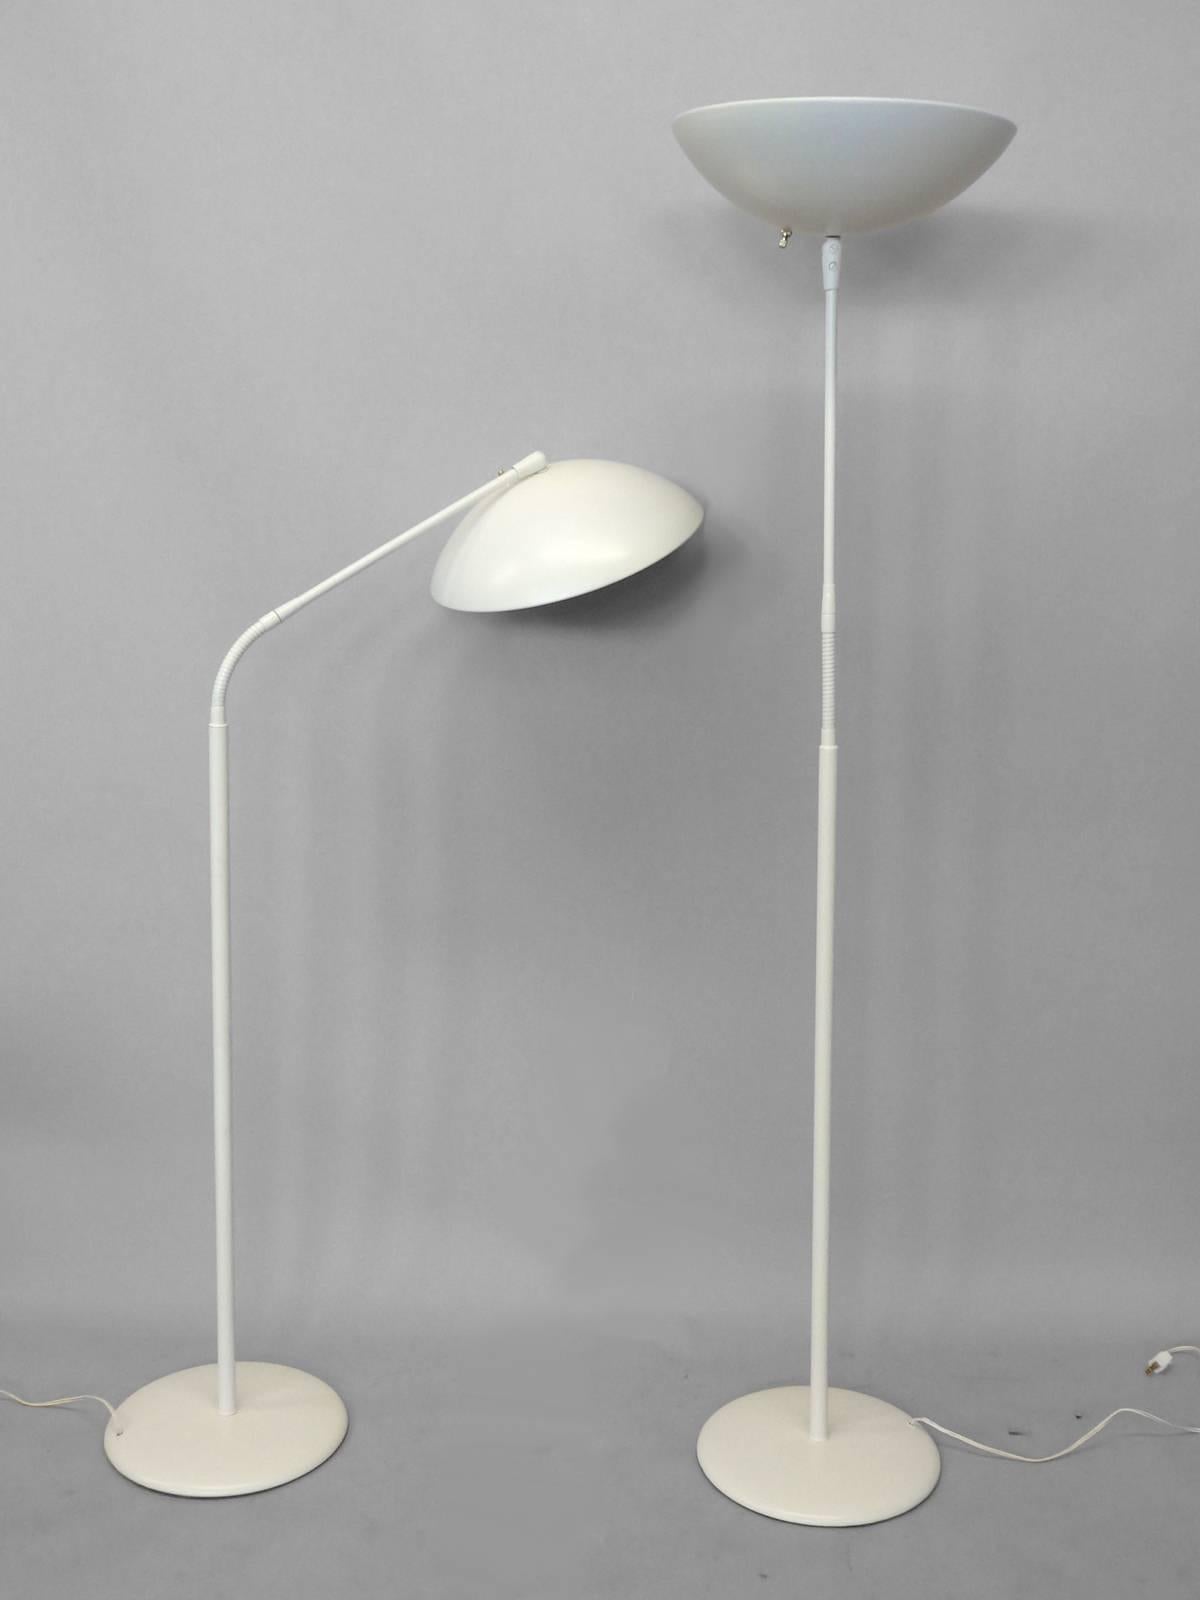 Pair of Gerald Thurston for Lightolier floor lamps.
             